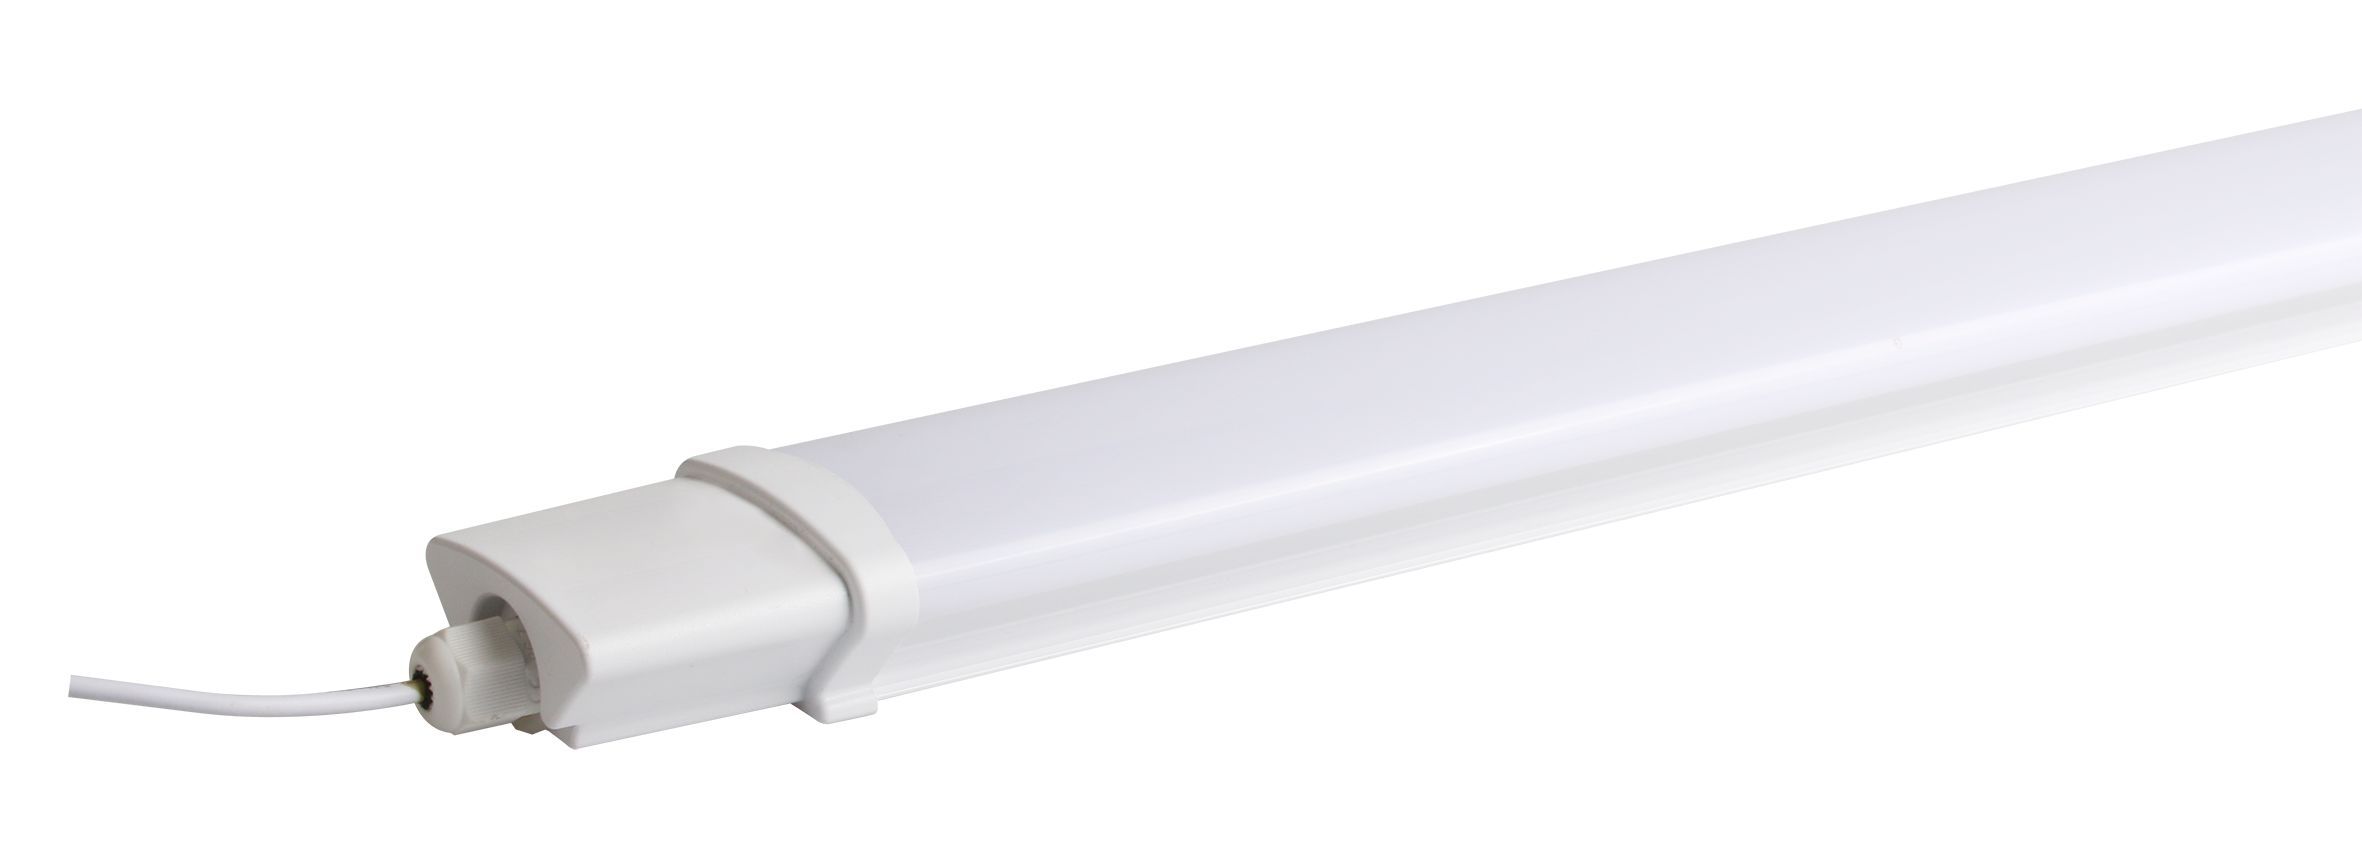 Good Quality Commercial Design White 18W Plastic LED Batten Light